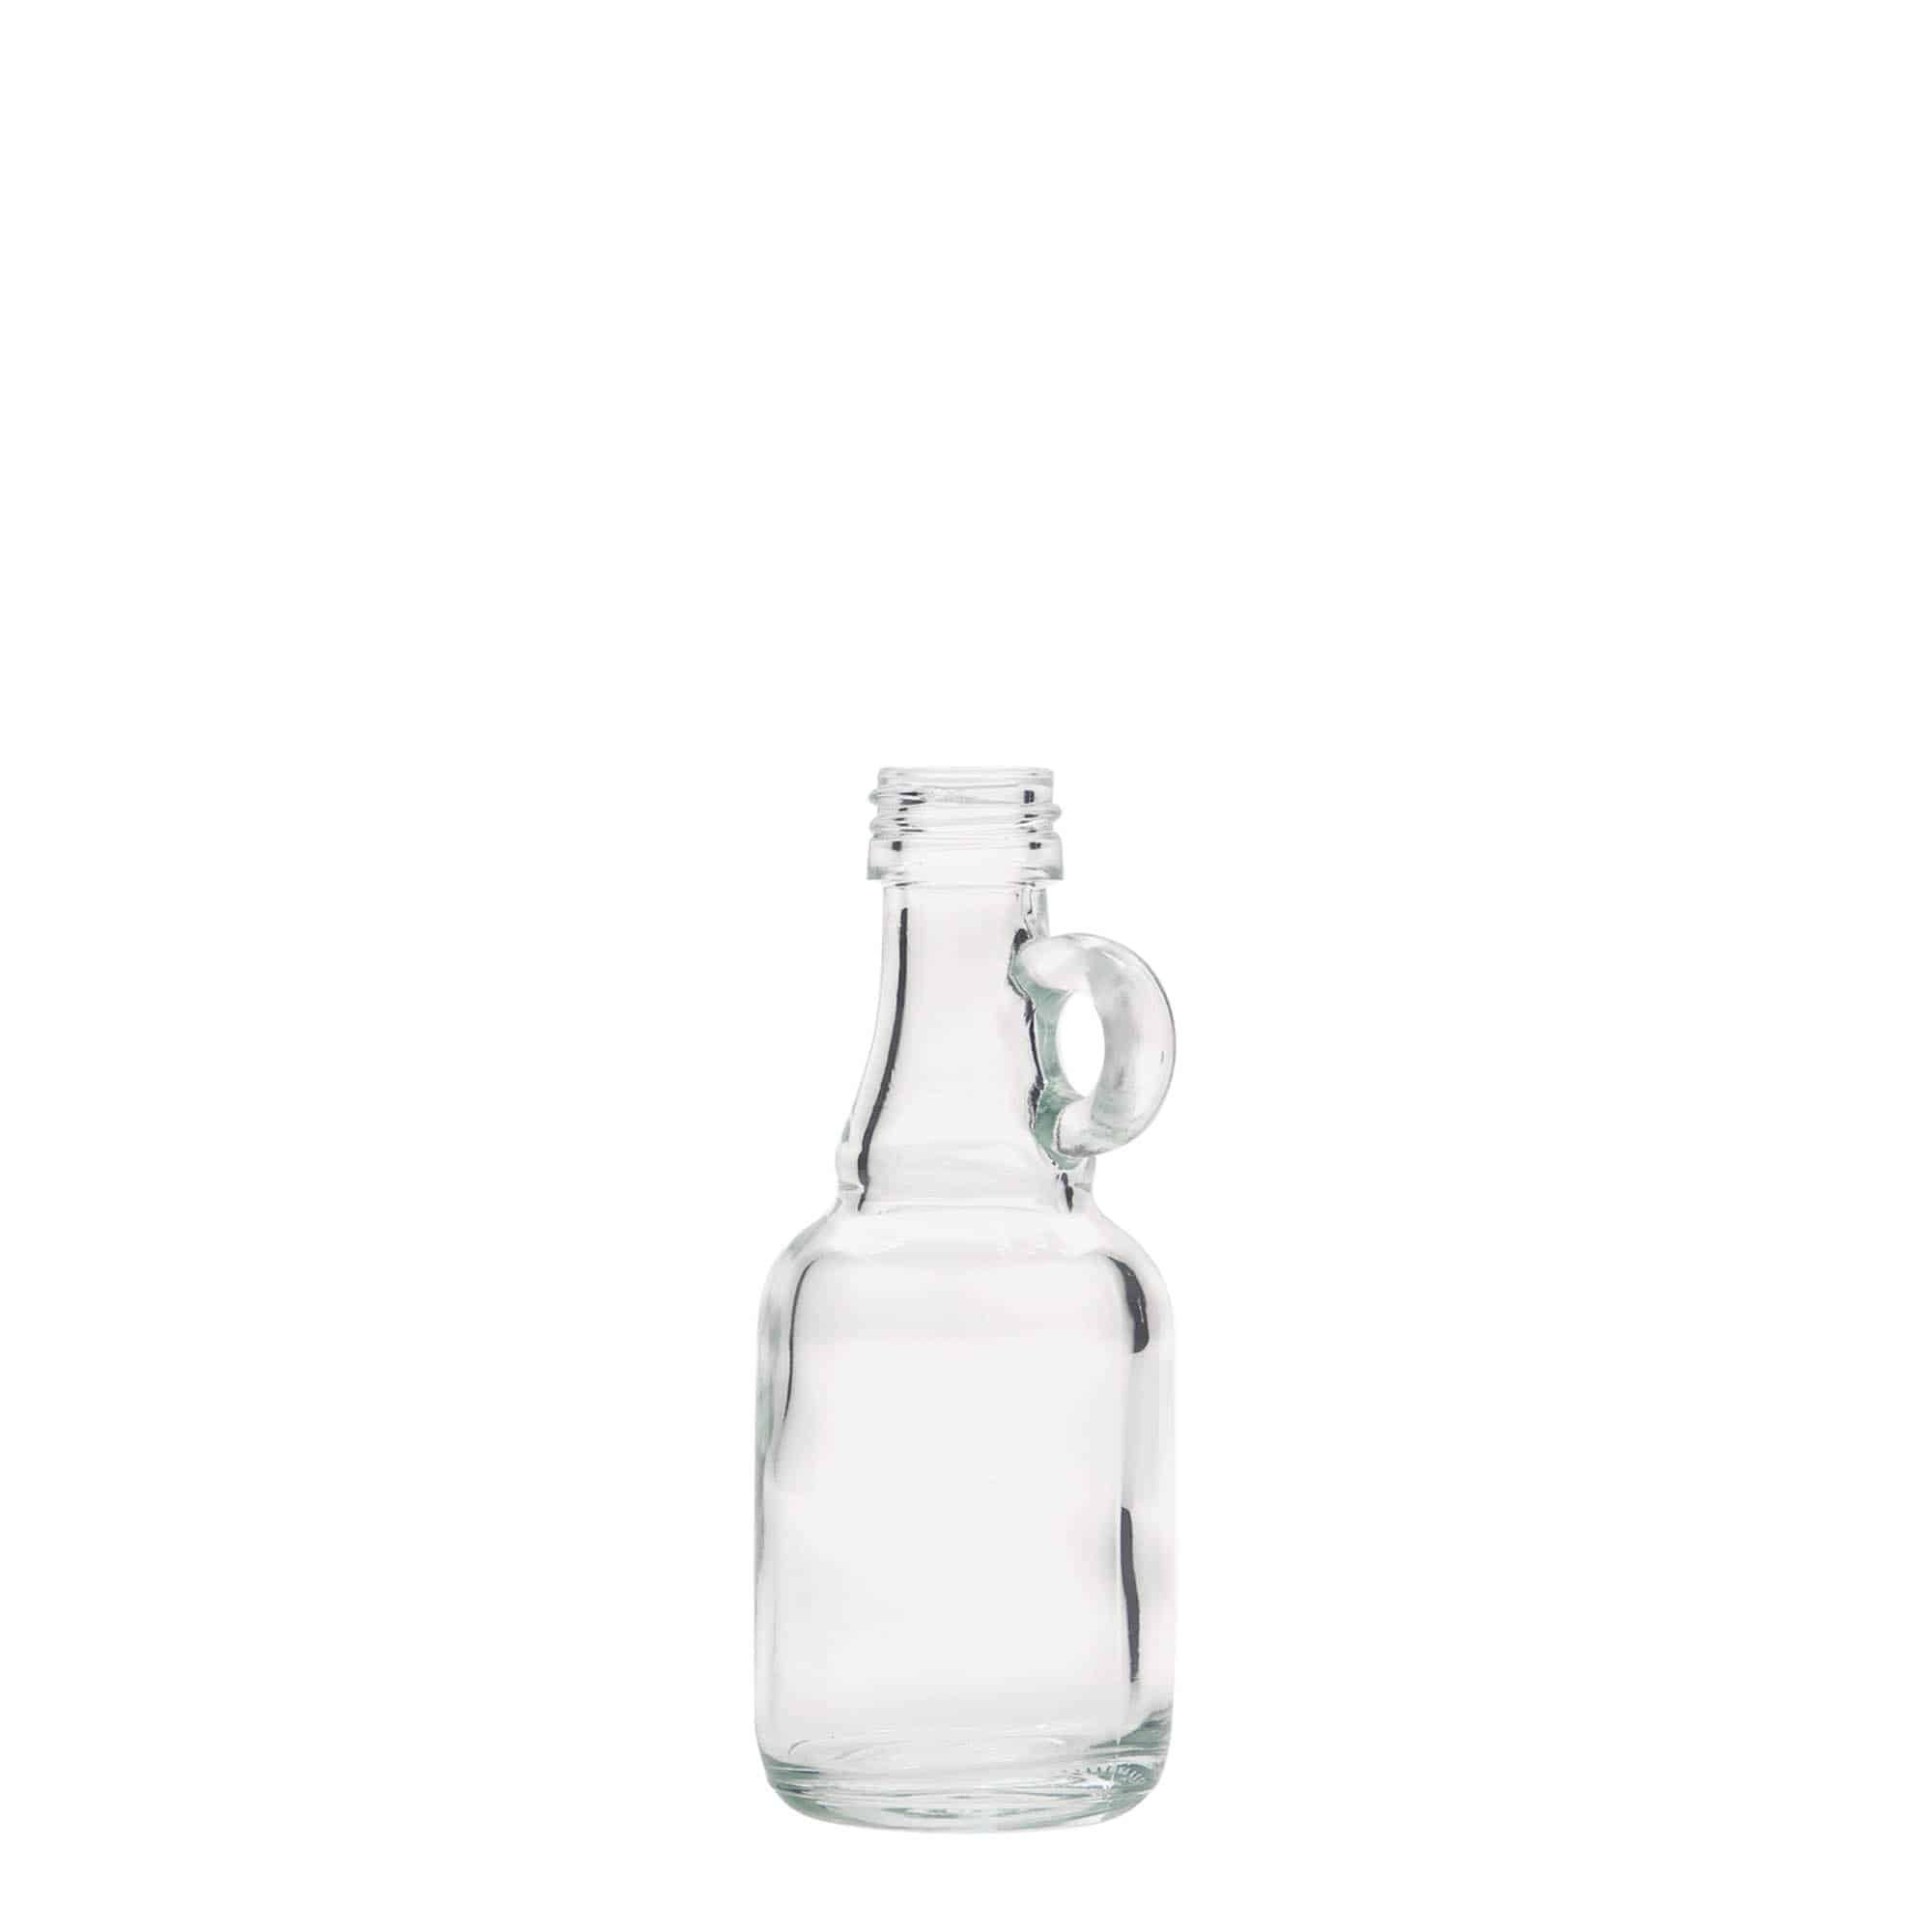 40 ml glasflaske 'Santos', åbning: PP 18